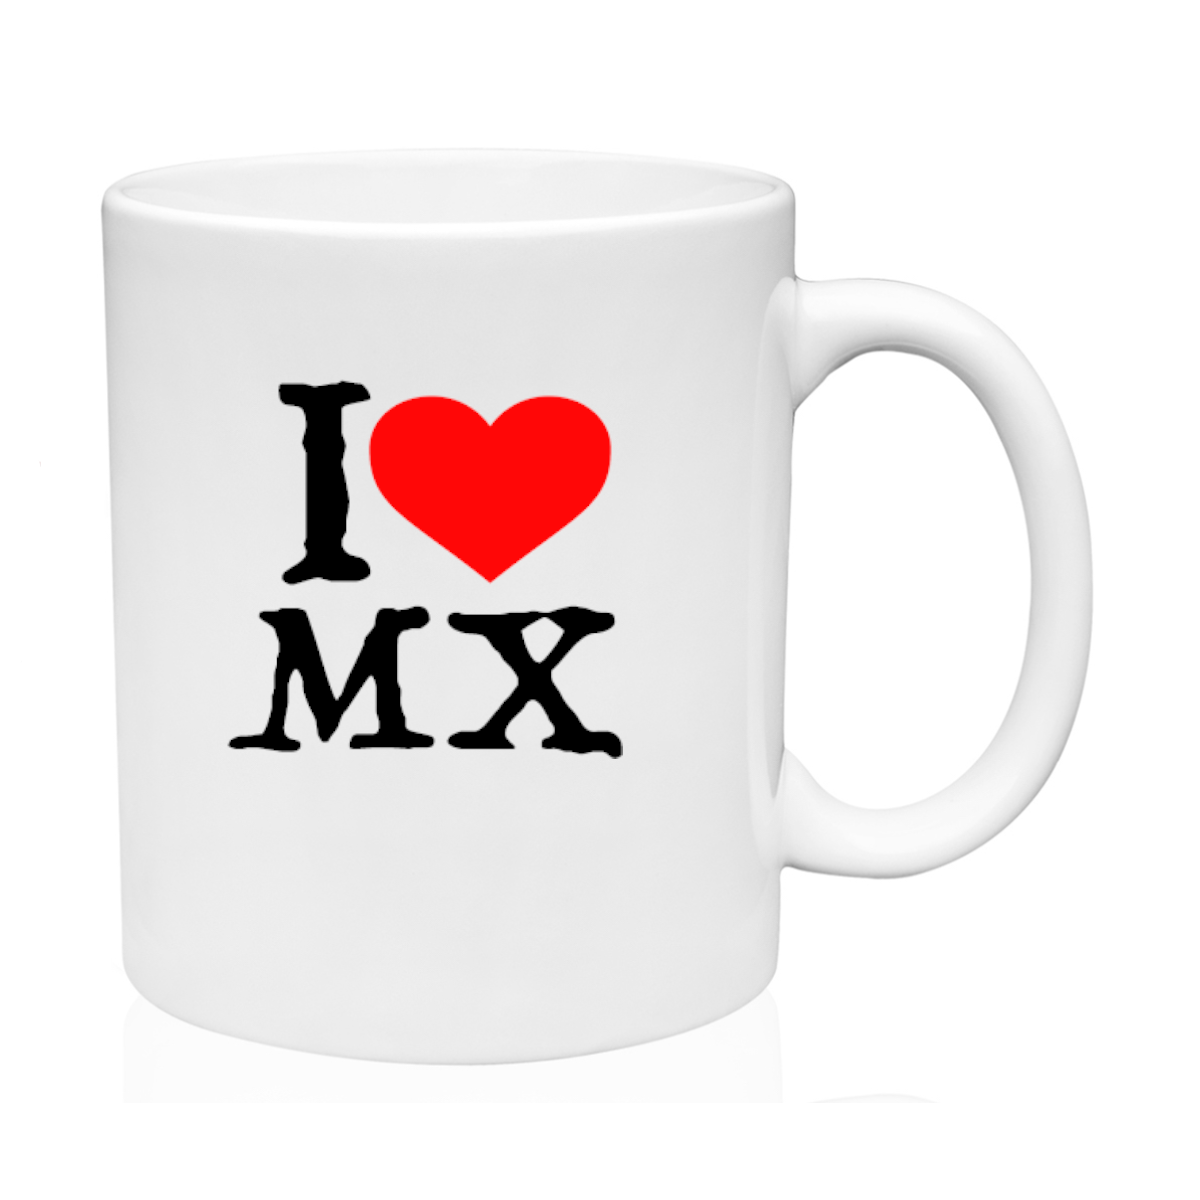 AGAD Turista (I Love Mexico Mug)